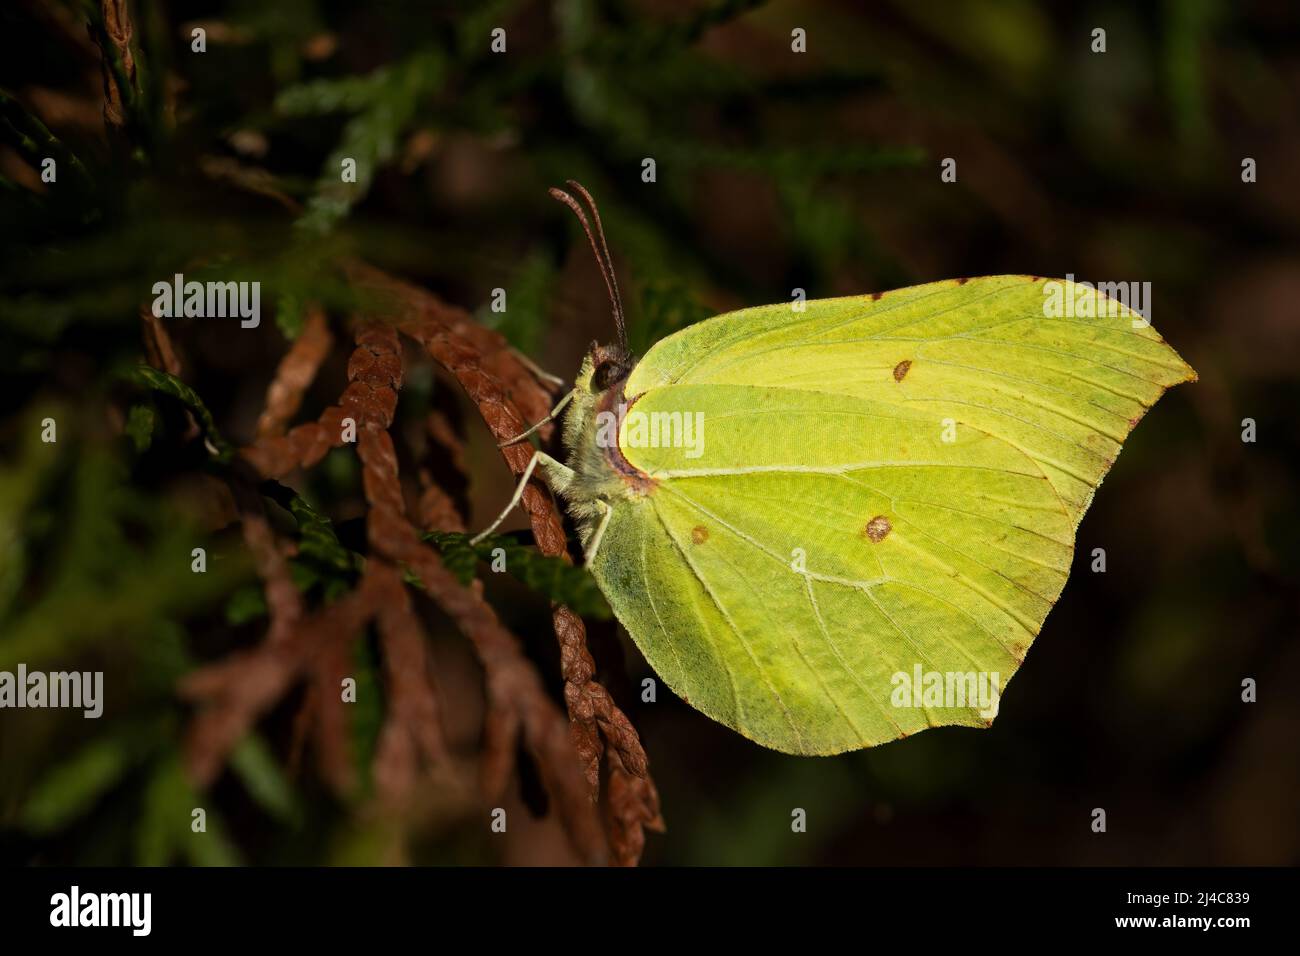 Común Brimstone - Gonepteryx rhamni, hermosa mariposa amarilla de los jardines y prados europeos, Zlin, República Checa. Foto de stock